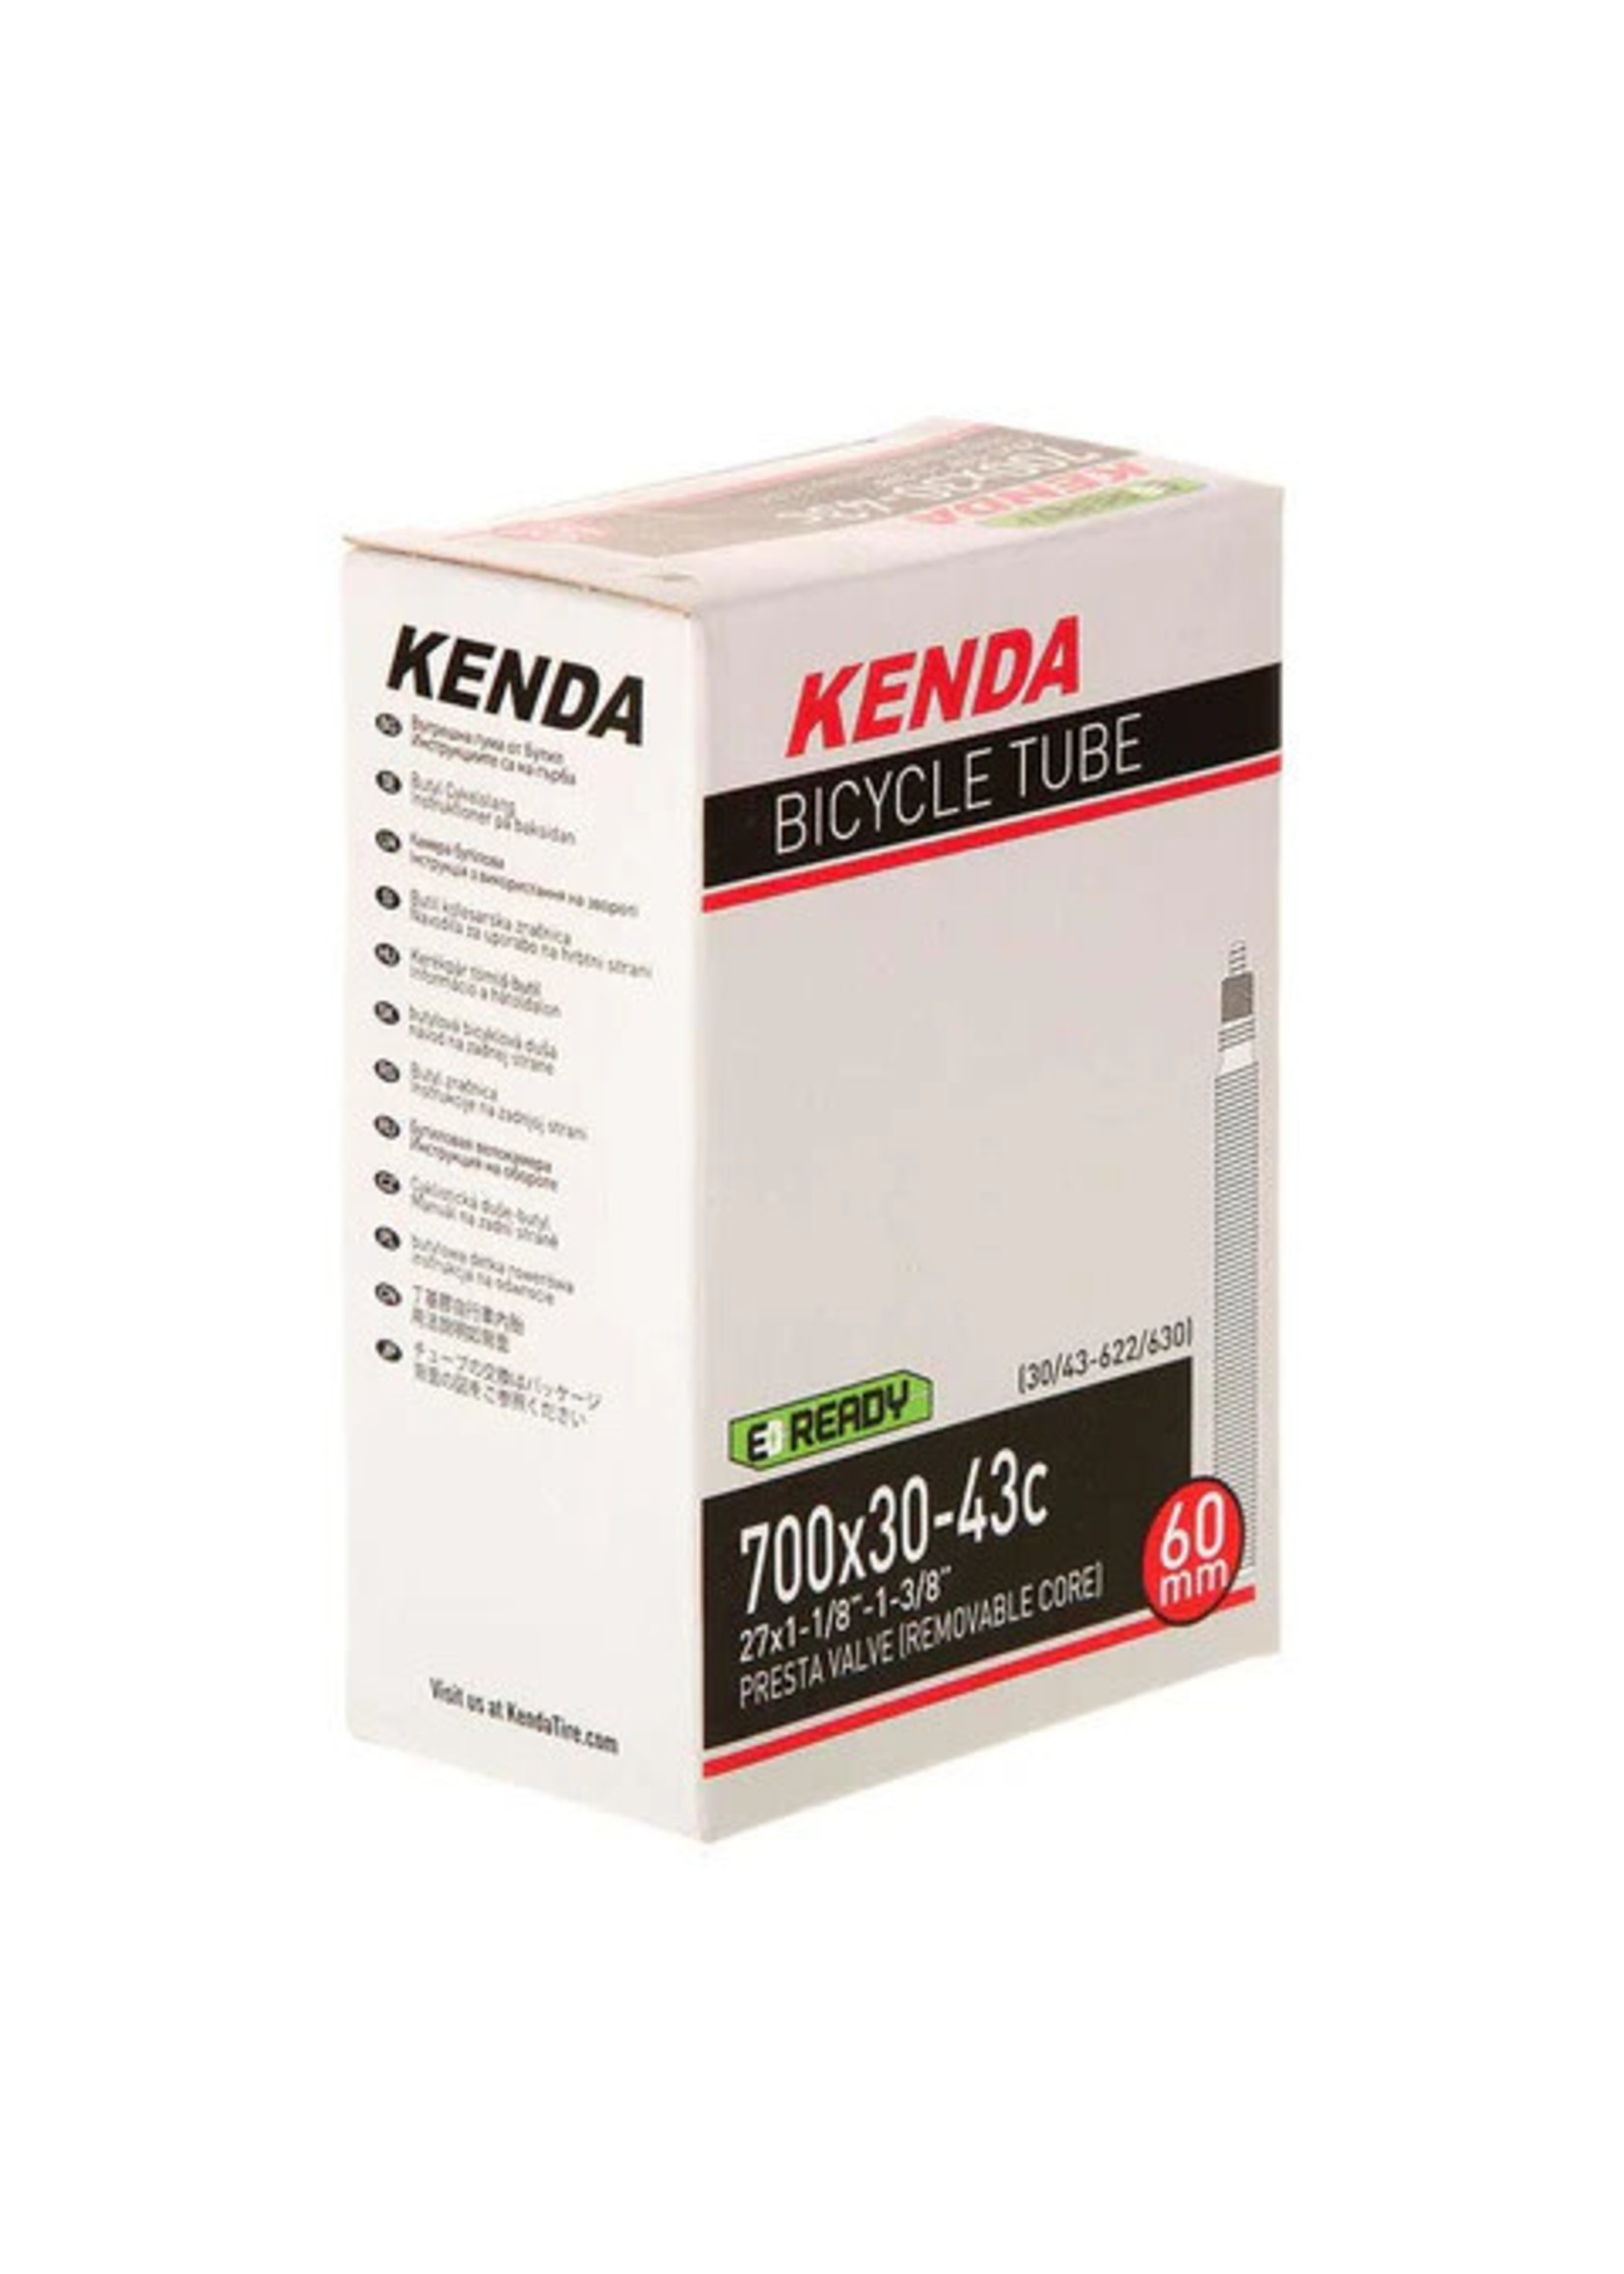 Kenda KENDA - Chambre à air - 700x30-43c - Presta 60mm